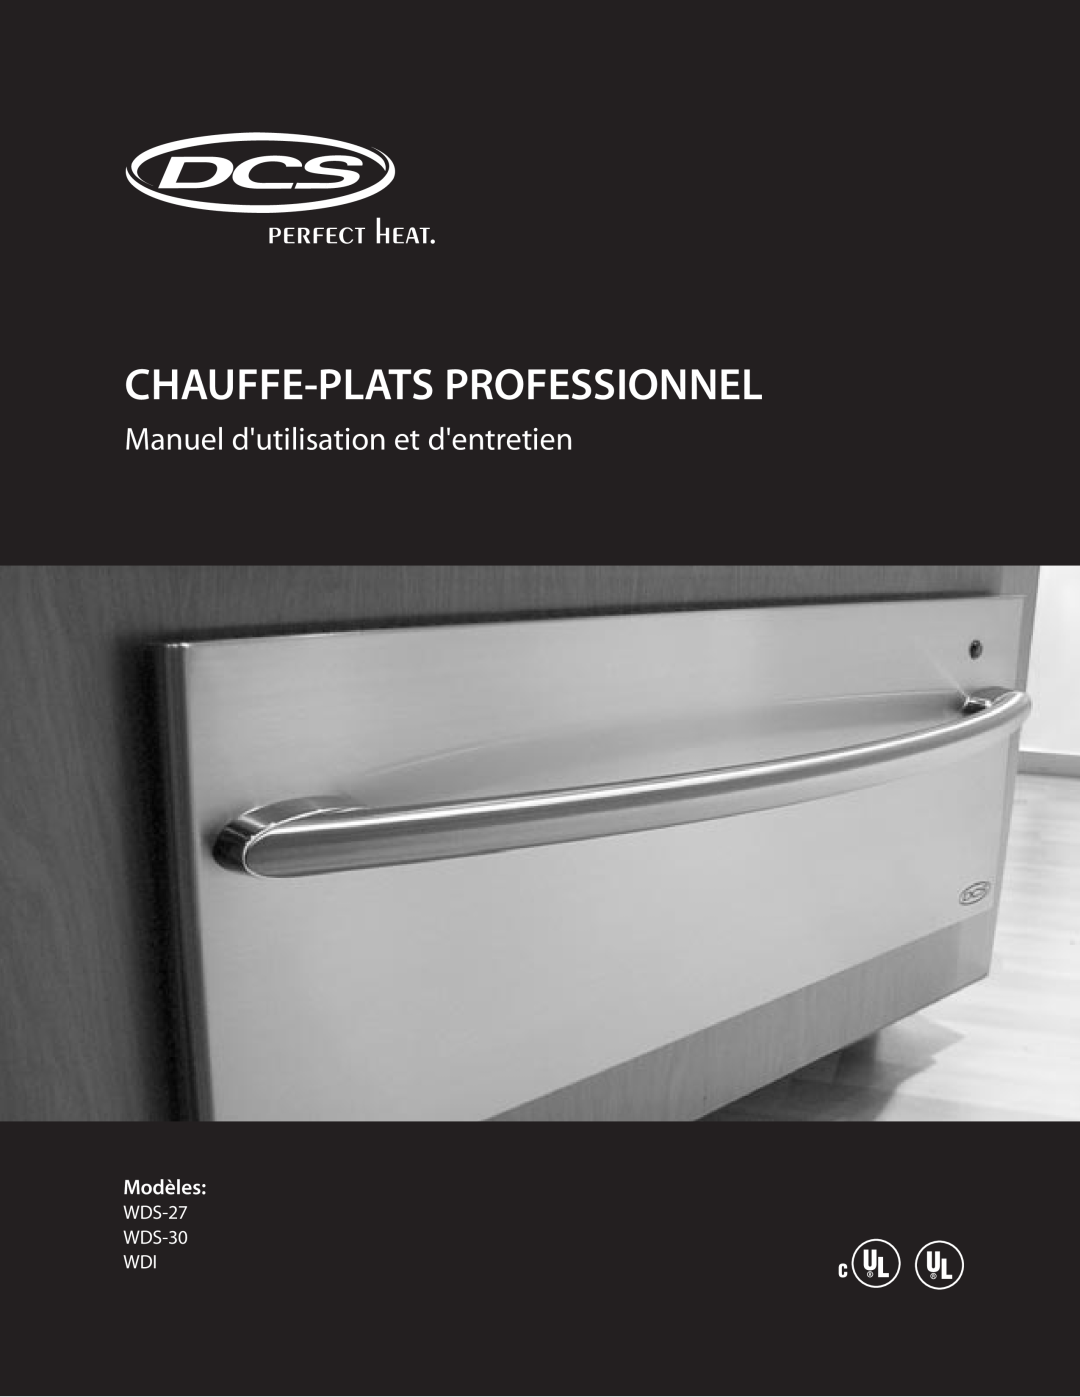 DCS manual Chauffe-Plats Professionnel, Manuel dutilisation et dentretien, Modèles, WDS-27 WDS-30 WDI 